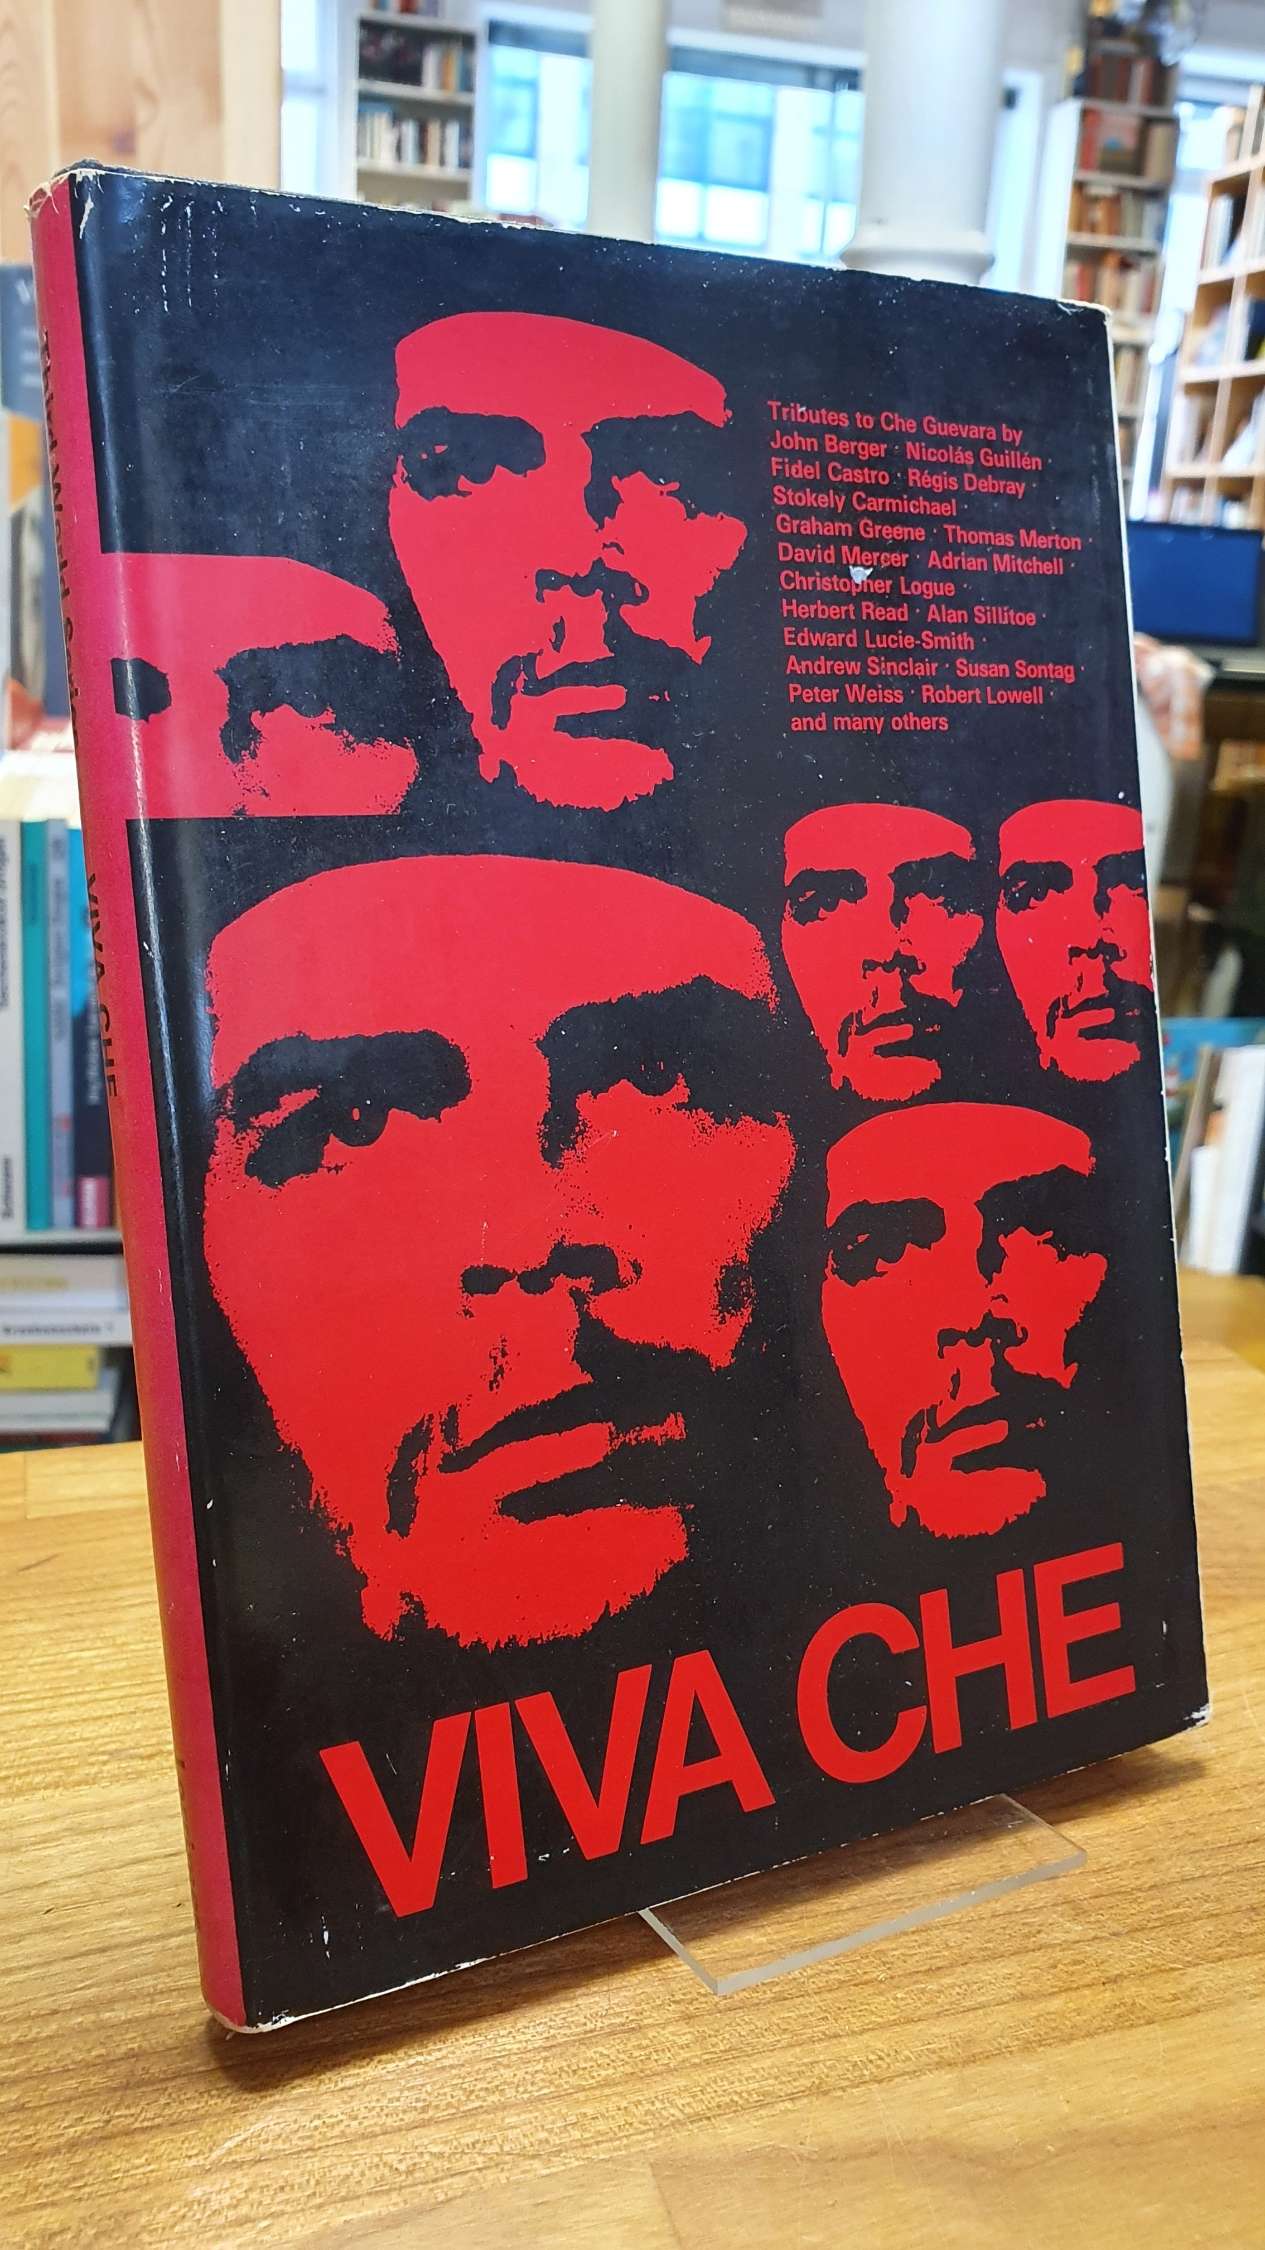 Alexandre, Viva Che – Contributions in Tribute to Ernesto Che Guevara,